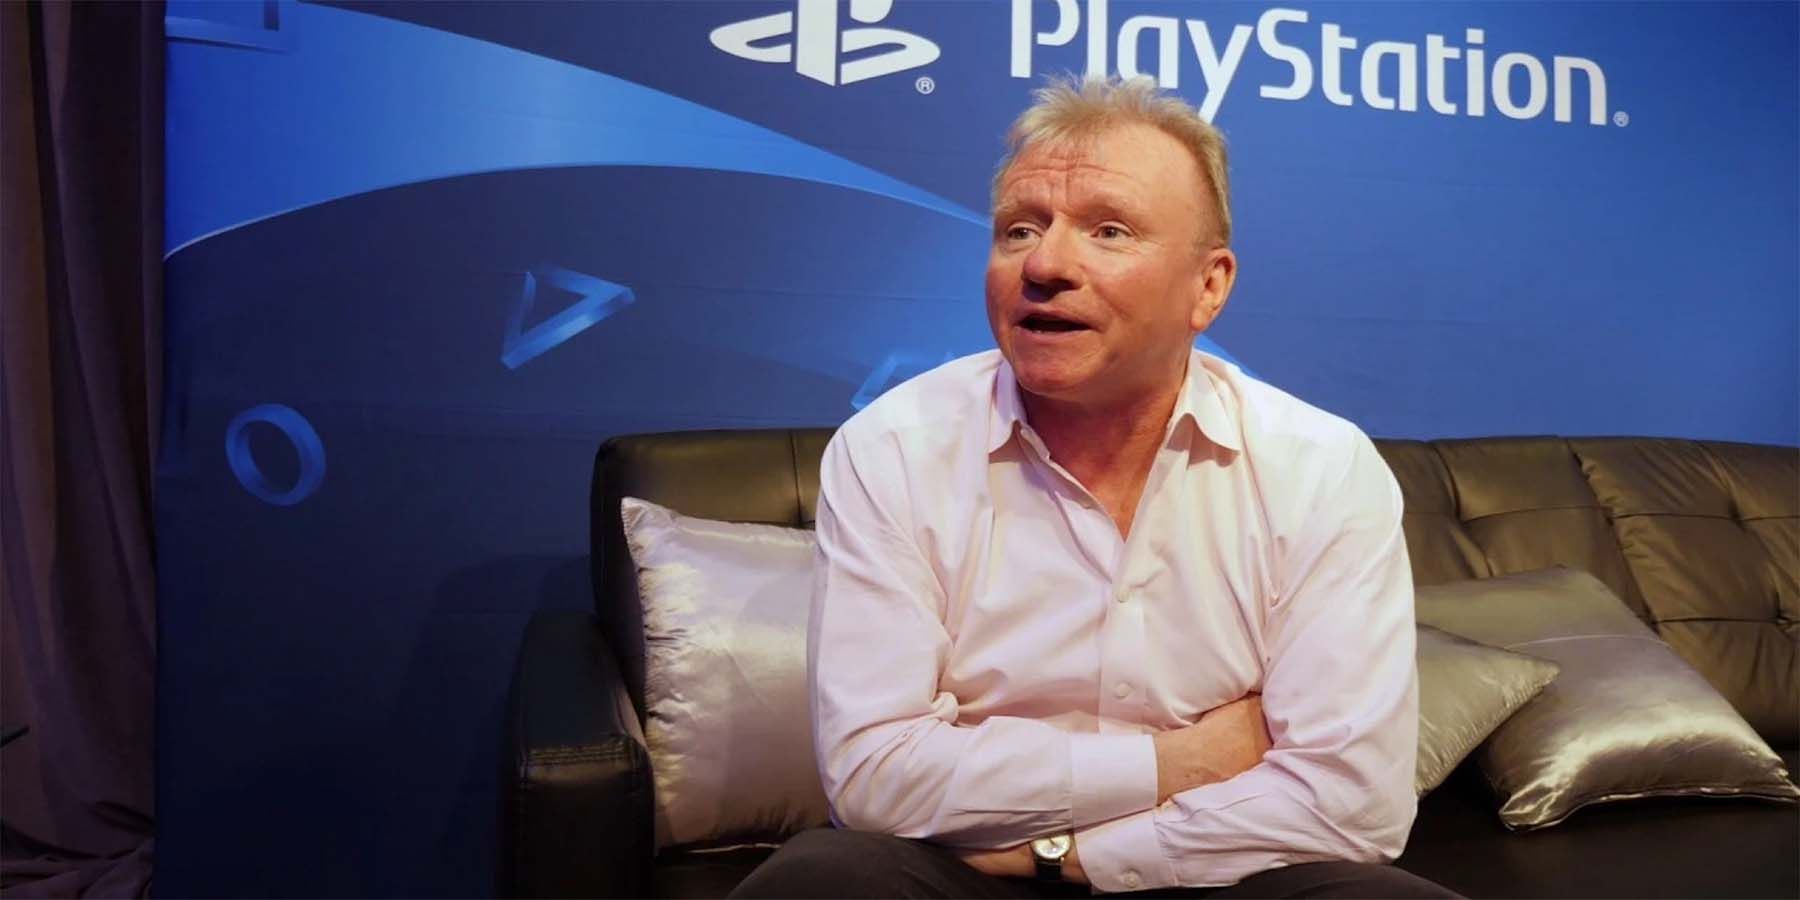 PlayStation’s Jim Ryan slated for å diskutere spillets fortid og fremtid i Fireside Chat